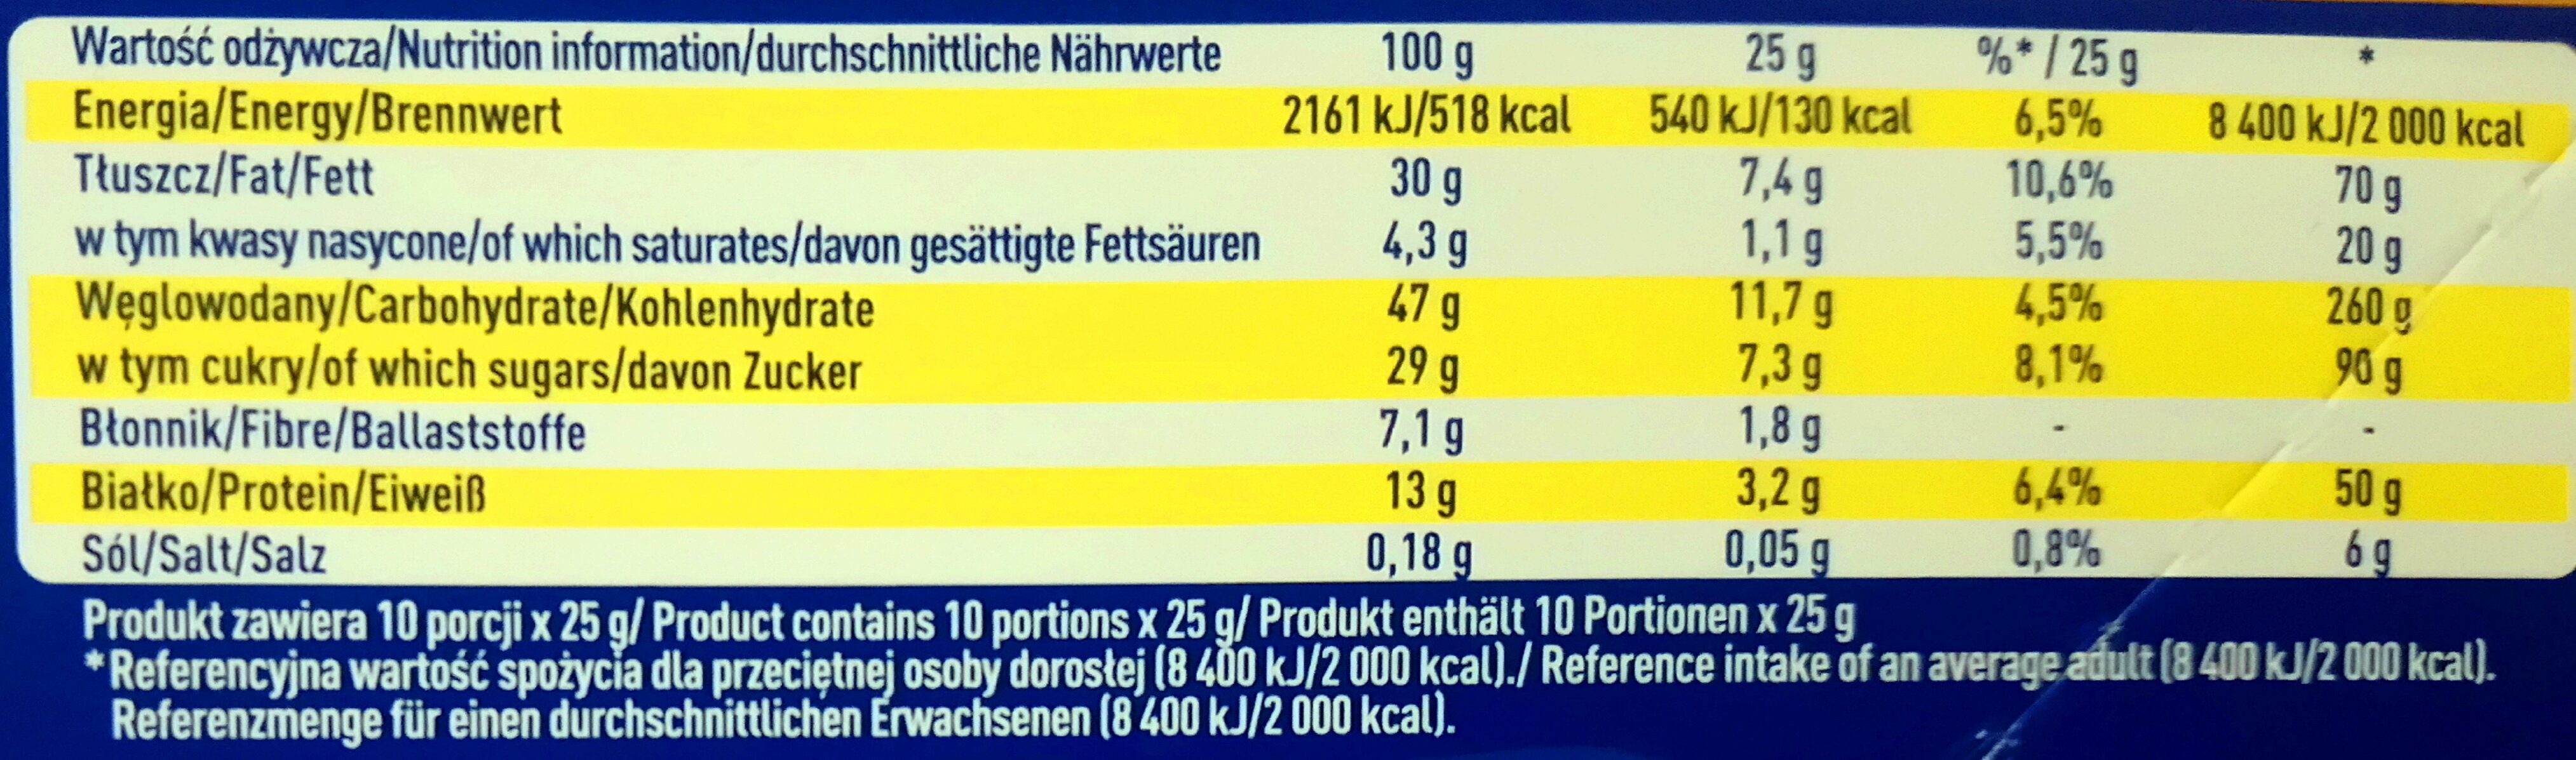 Halva Mit Vanillegeschmack 250 g - Nutrition facts